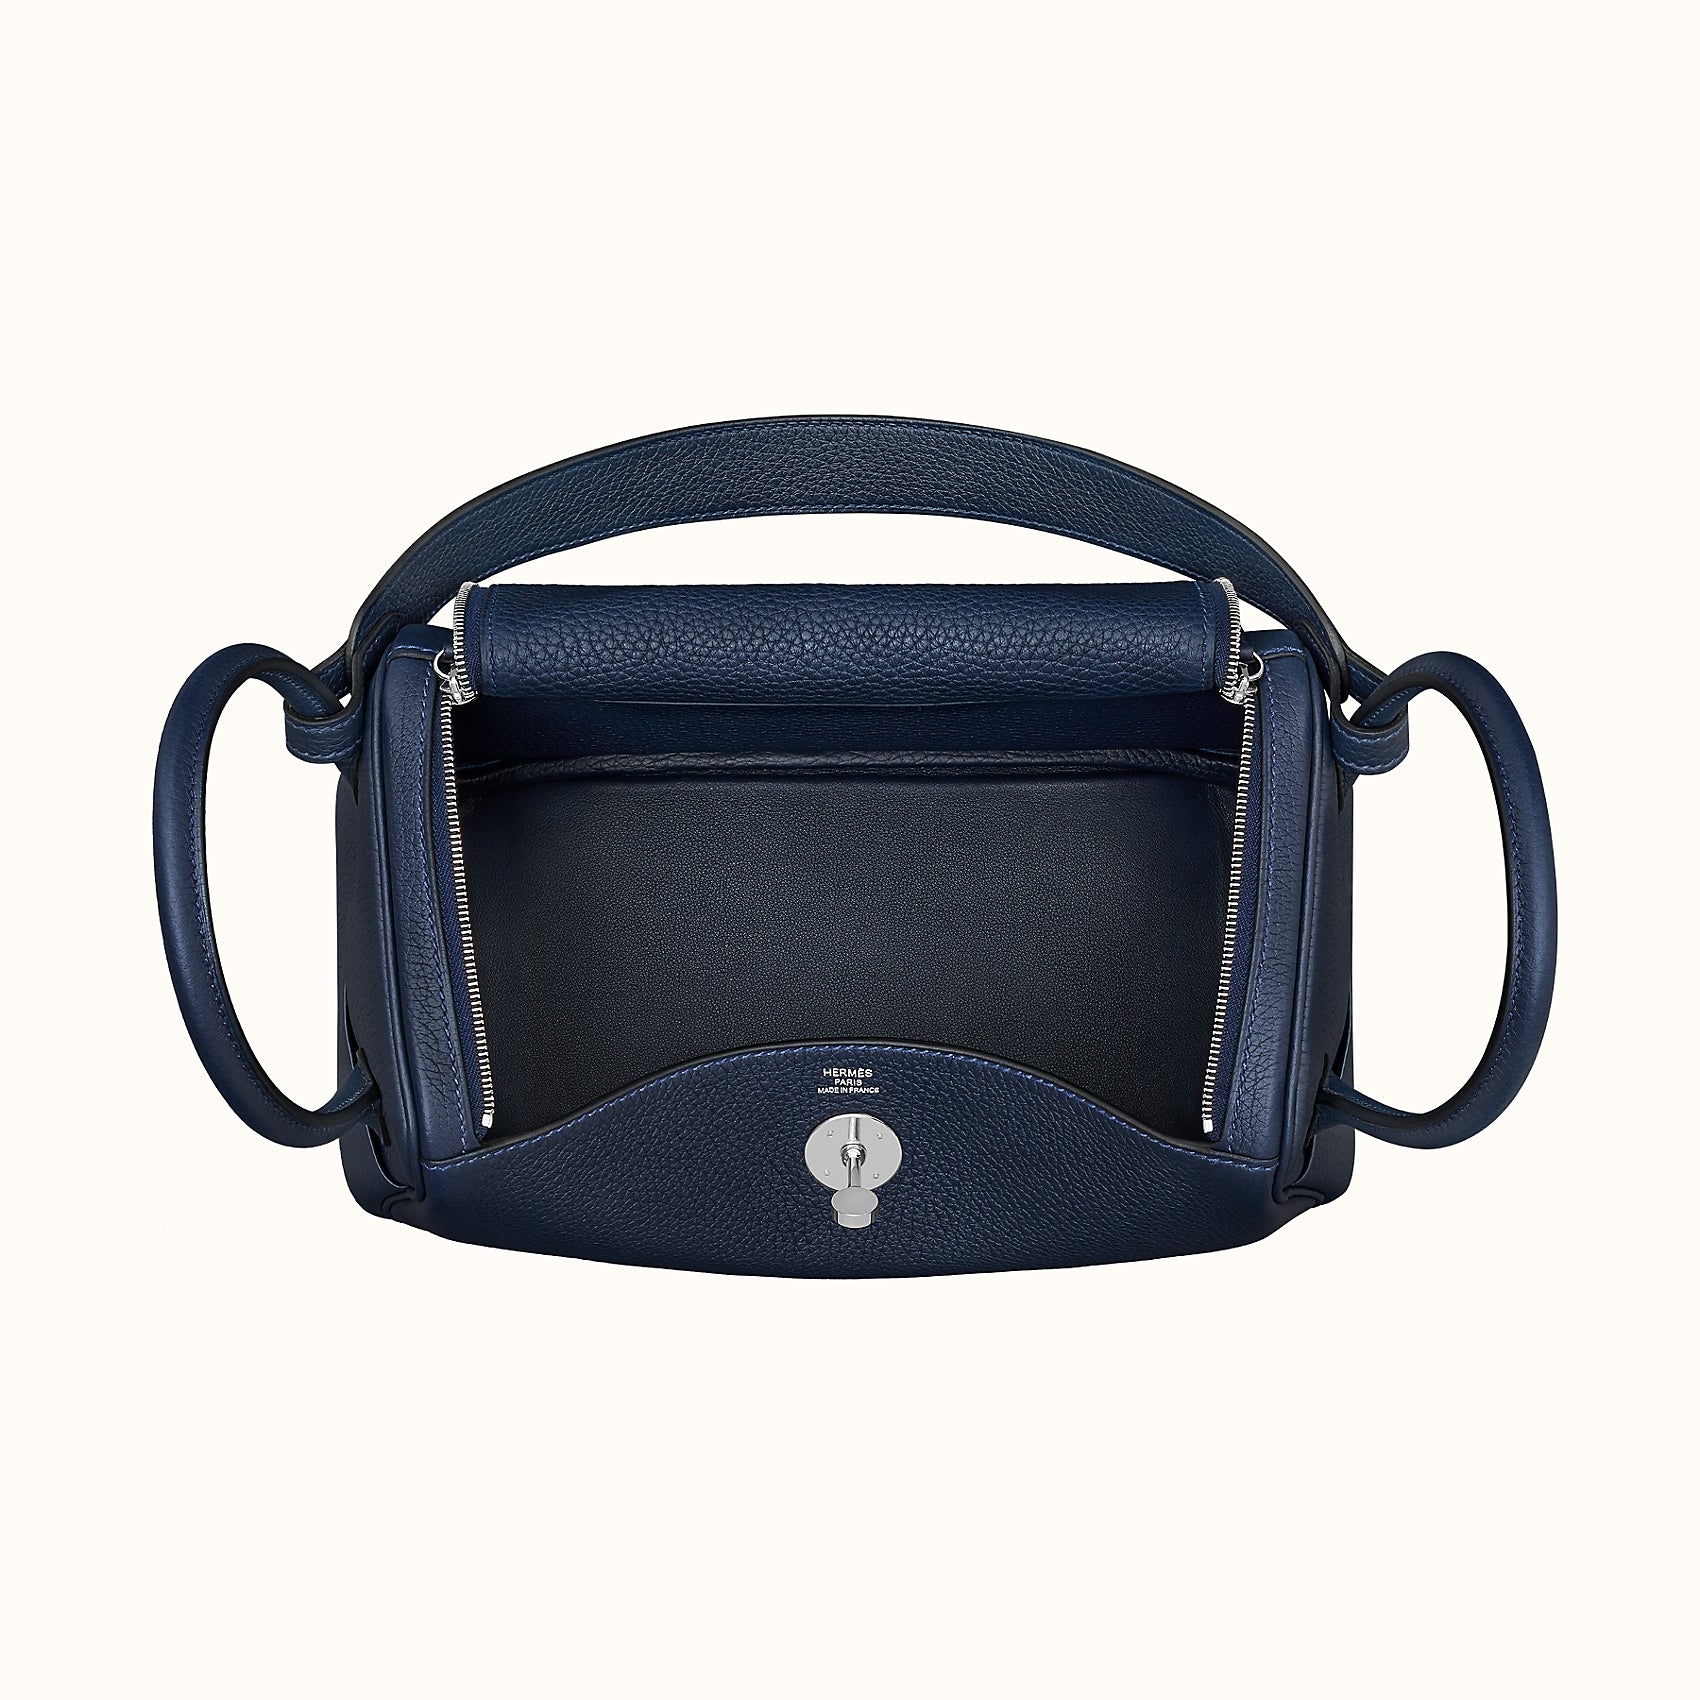 Hermes Birkin Handbag Bleu Encre Clemence with Gold Hardware 30 Blue